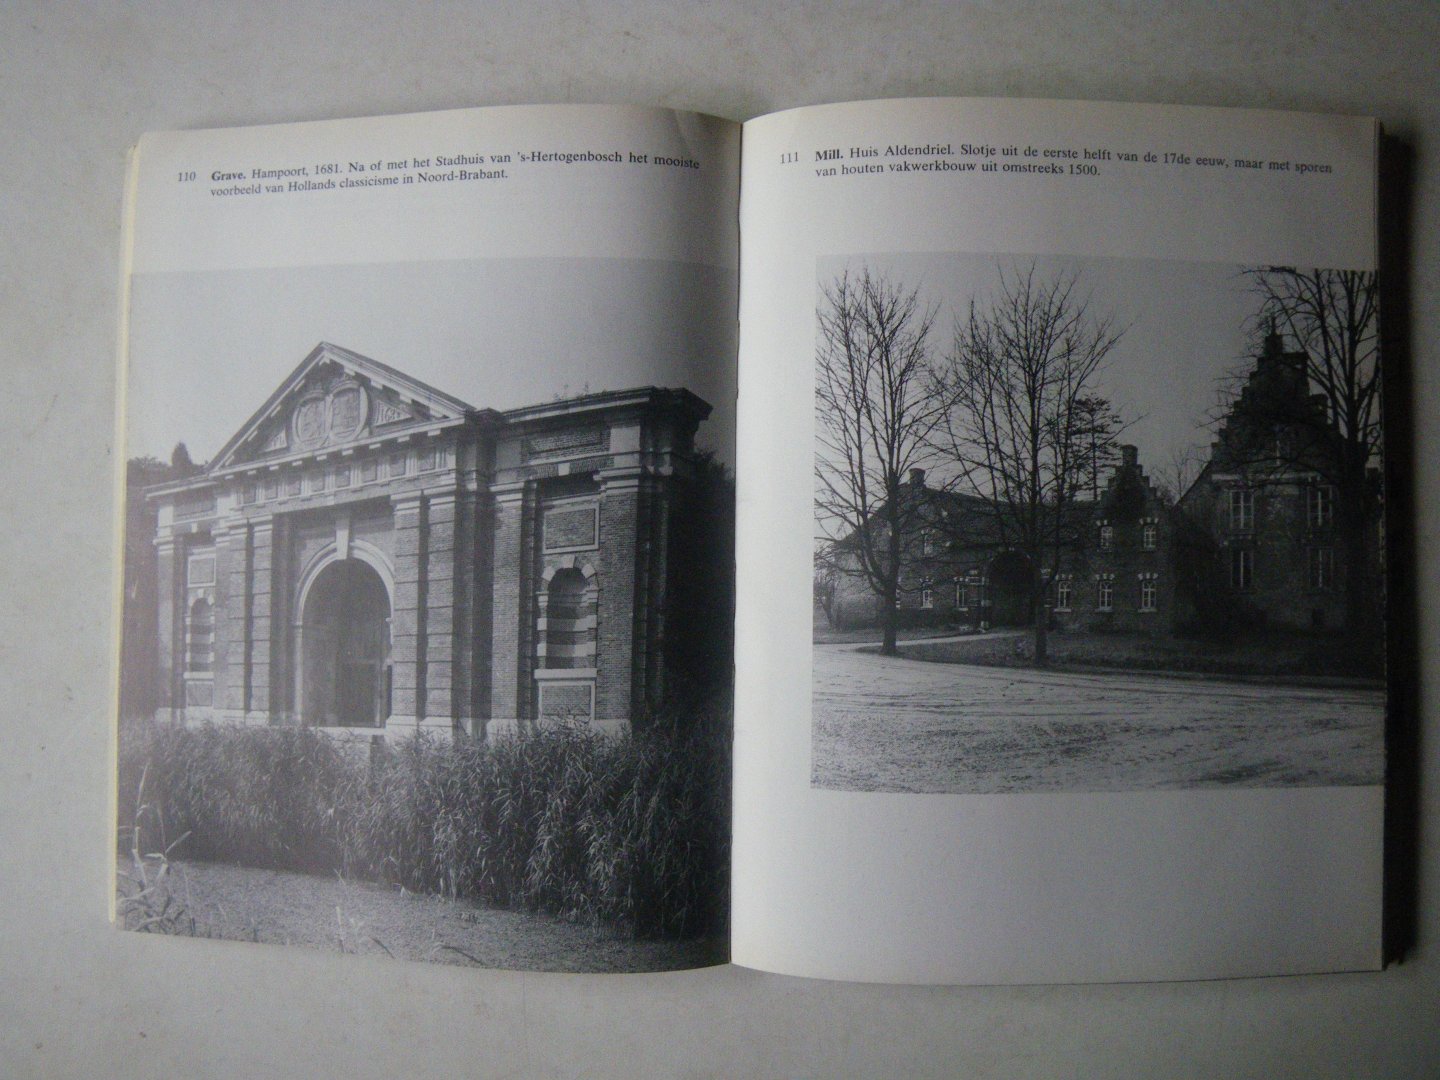 Agt, J.F. van; Peeters, C.; Illustrator : Delemarre, G. Th.; Dukker, G.J. e.a. - Nederlandse monumenten in beeld Noord-Brabant Limburg